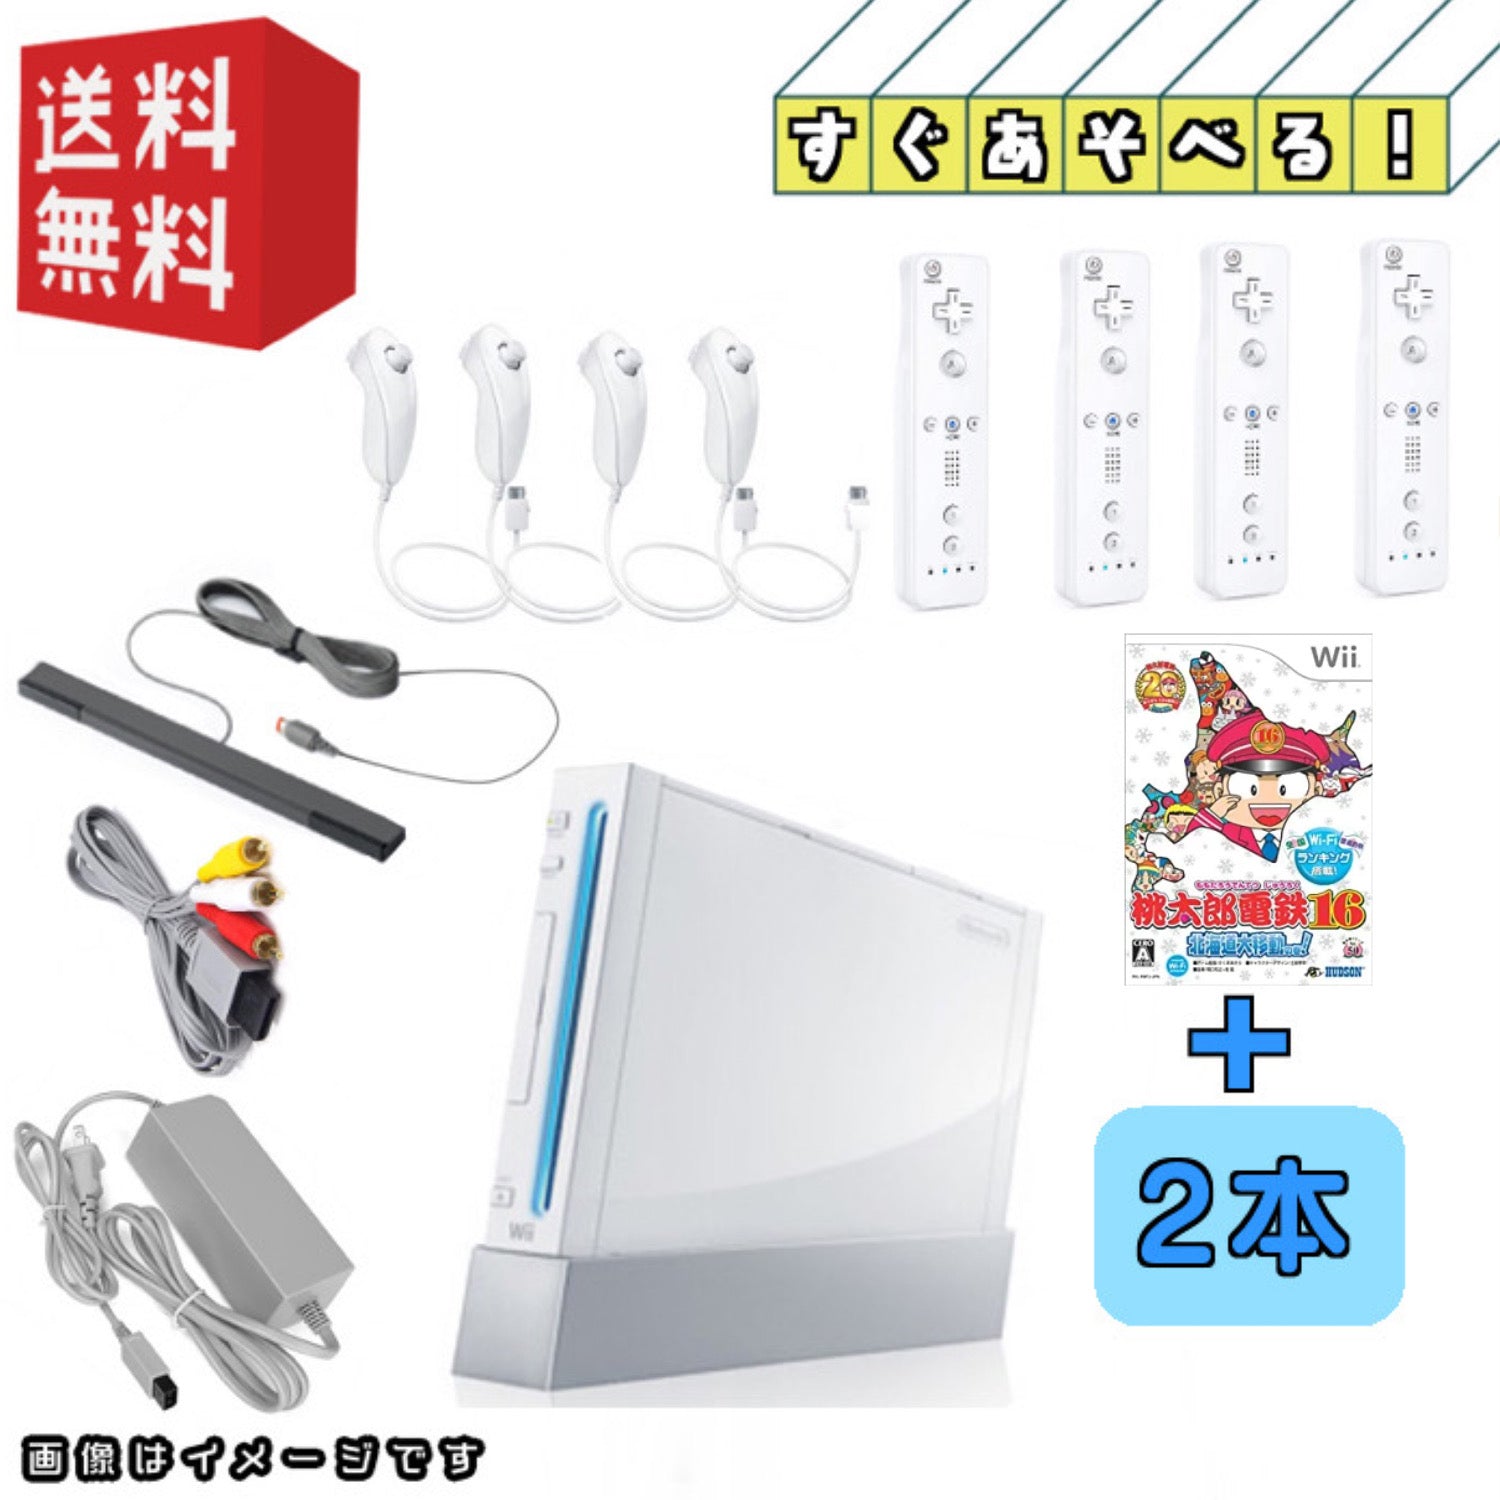 家庭用ゲーム機本体Wii本体 ソフト4点セット - 家庭用ゲーム機本体